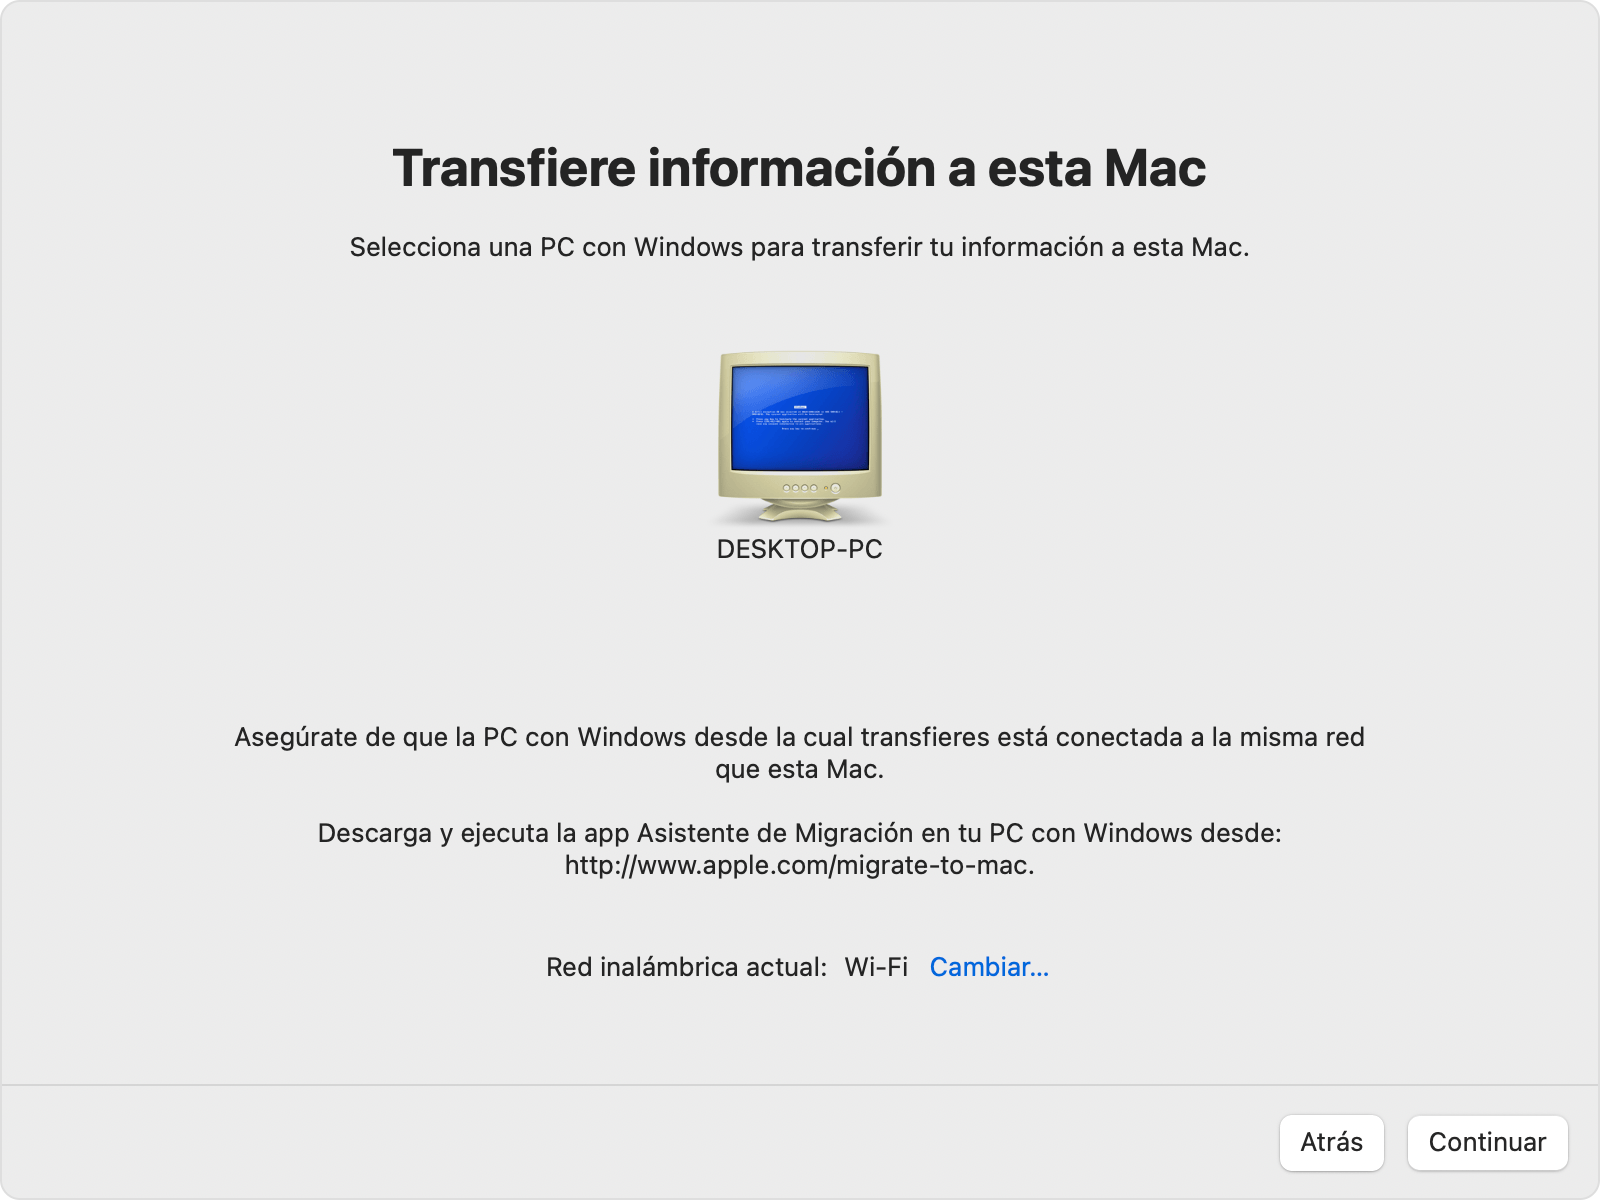 Transferencia del Asistente de Migración a esta Mac